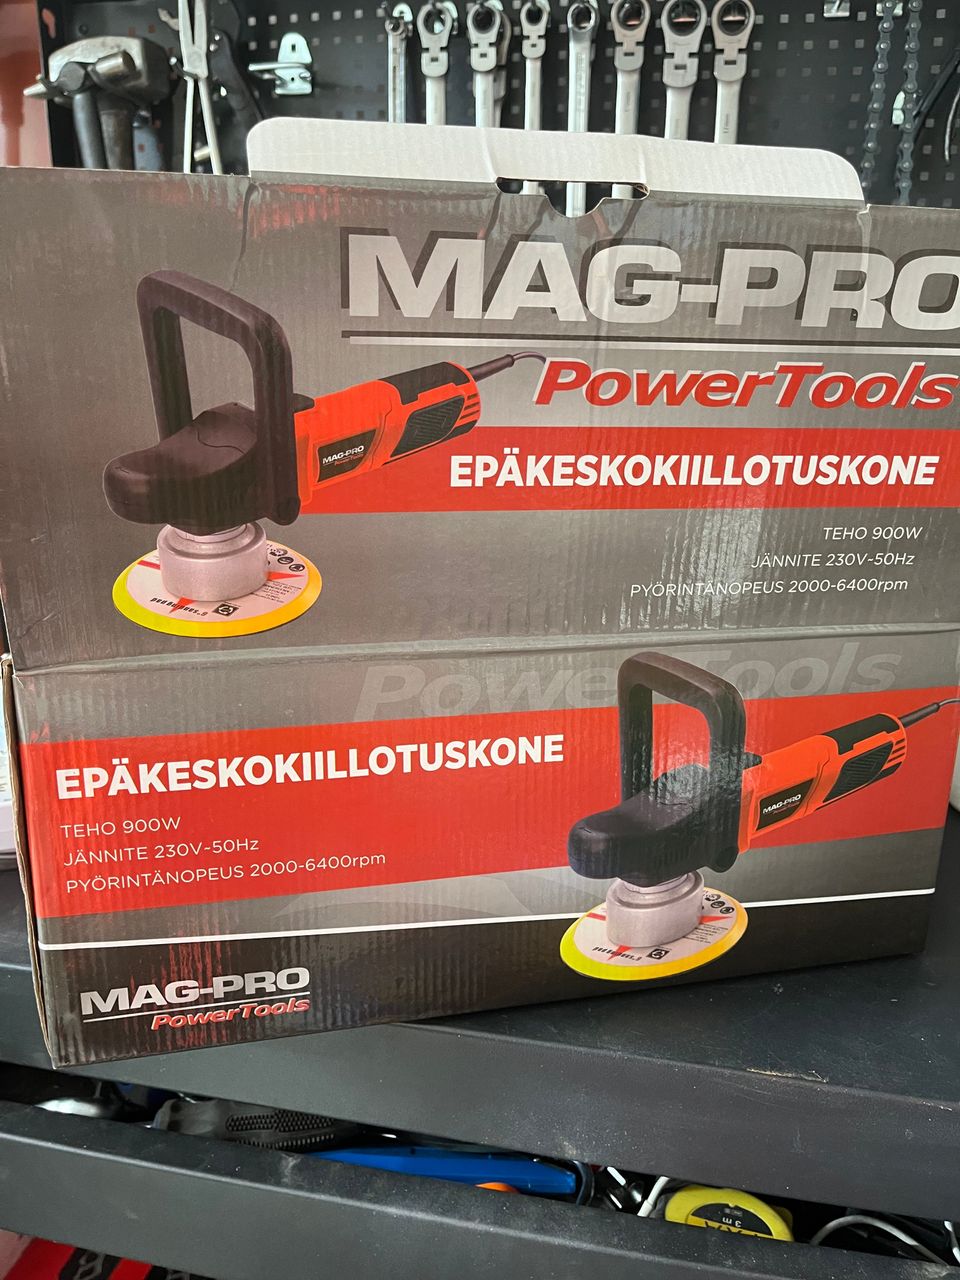 Mag-Pro Power Tools epäkeskokiillotuskone 900w